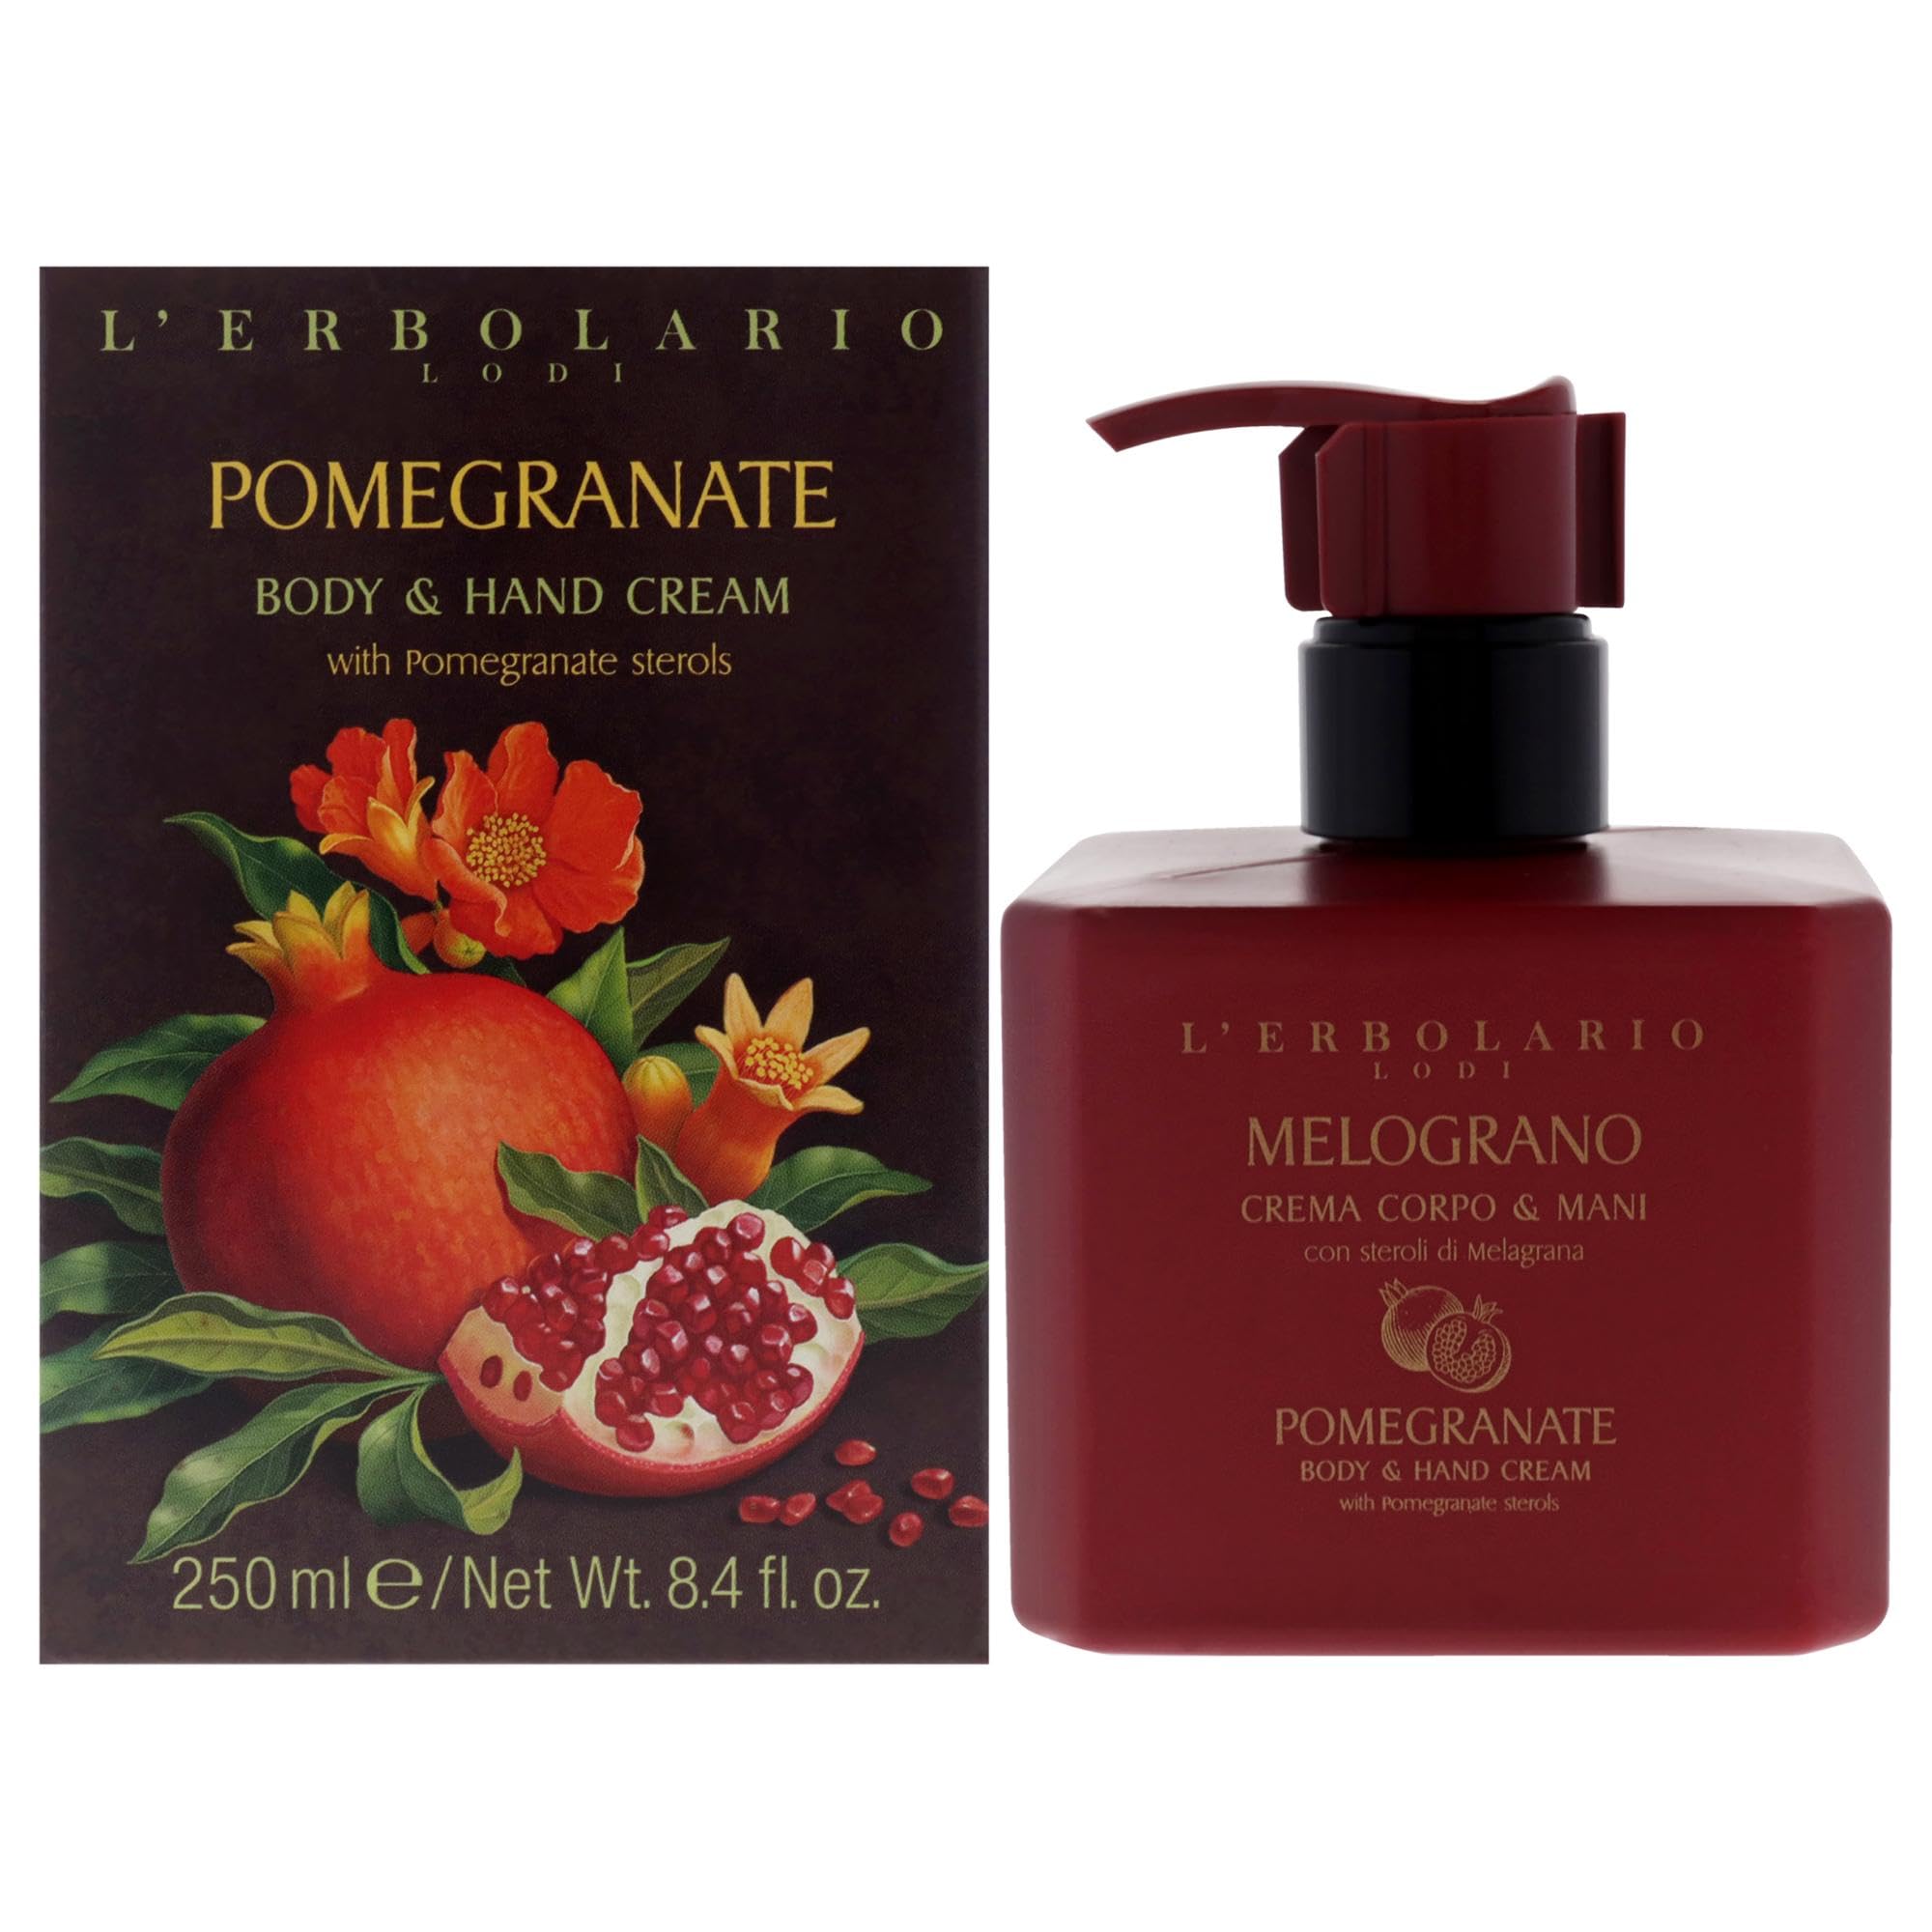 Pomegranate Body & Hand Cream